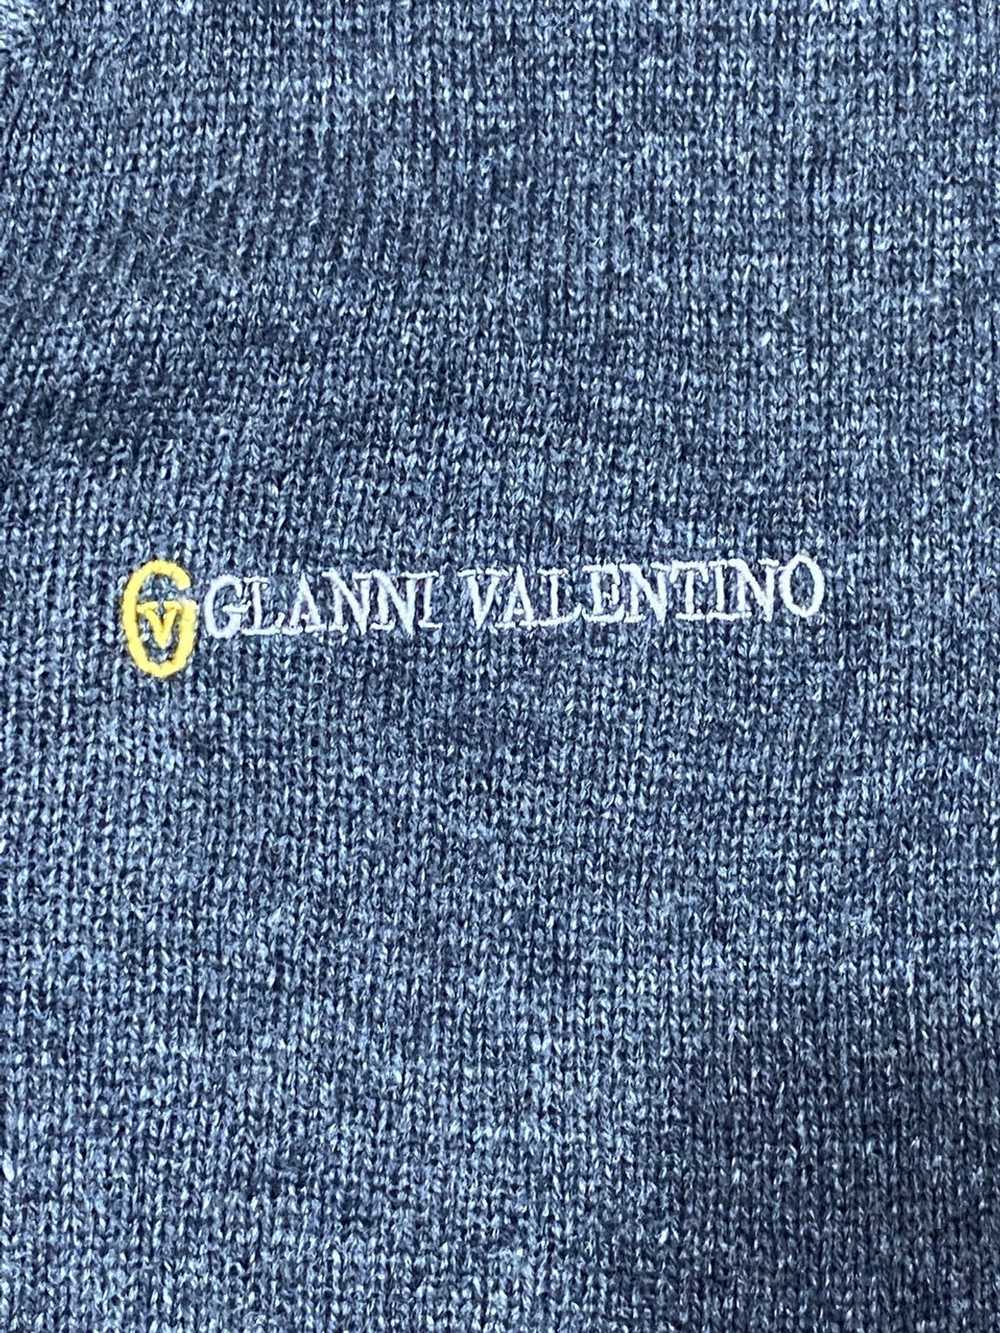 Gianni × Valentino × Vintage vintage Cardigan GIA… - image 5